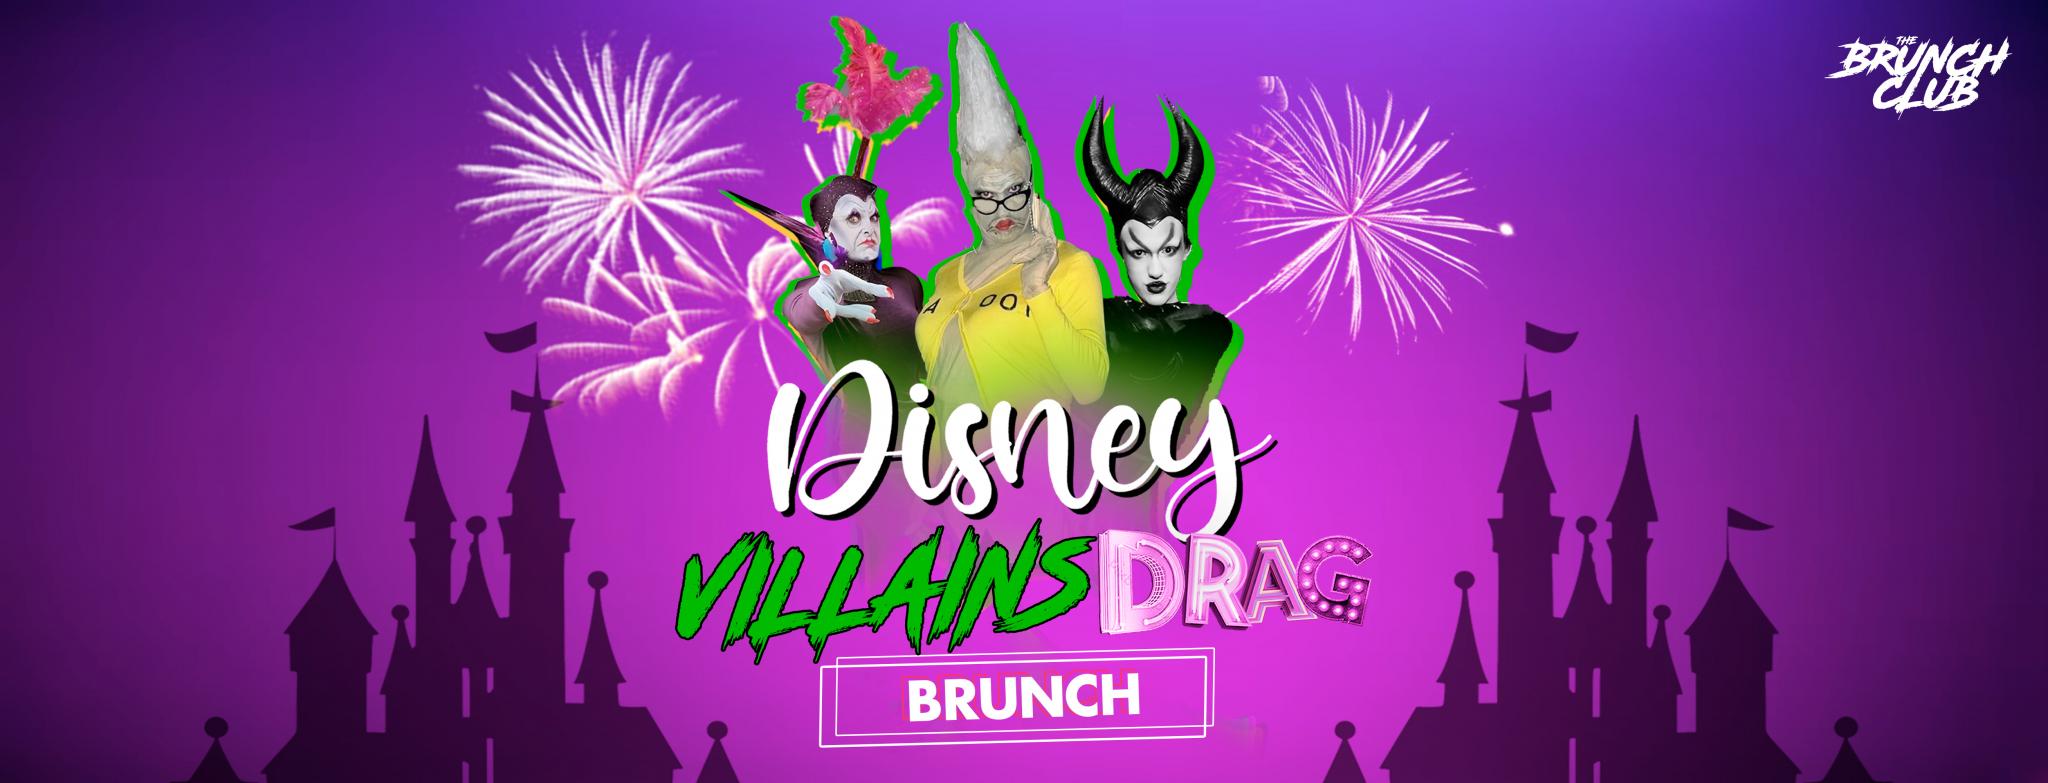 Disney Villains Drag Bottomless Brunch - Liverpool